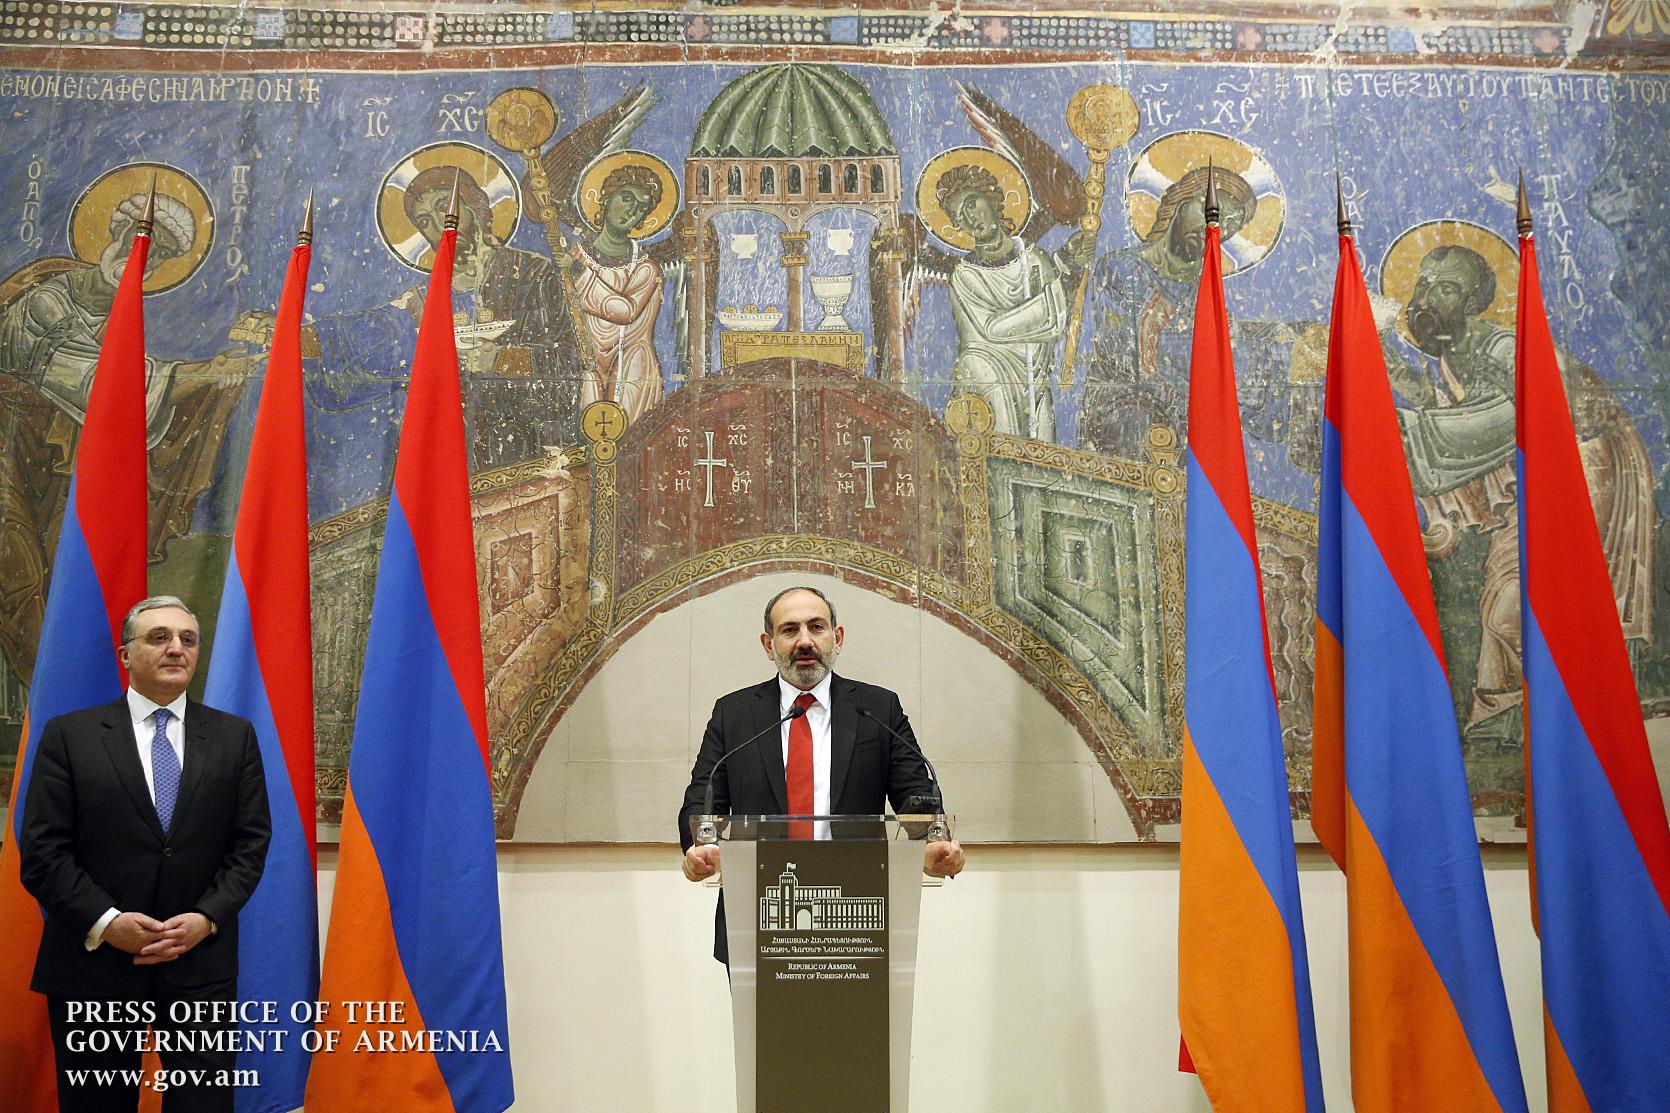 2020՝ Հայաստանի արտաքին քաղաքականության ամենաձախողված տարին 1991-ից ի վեր